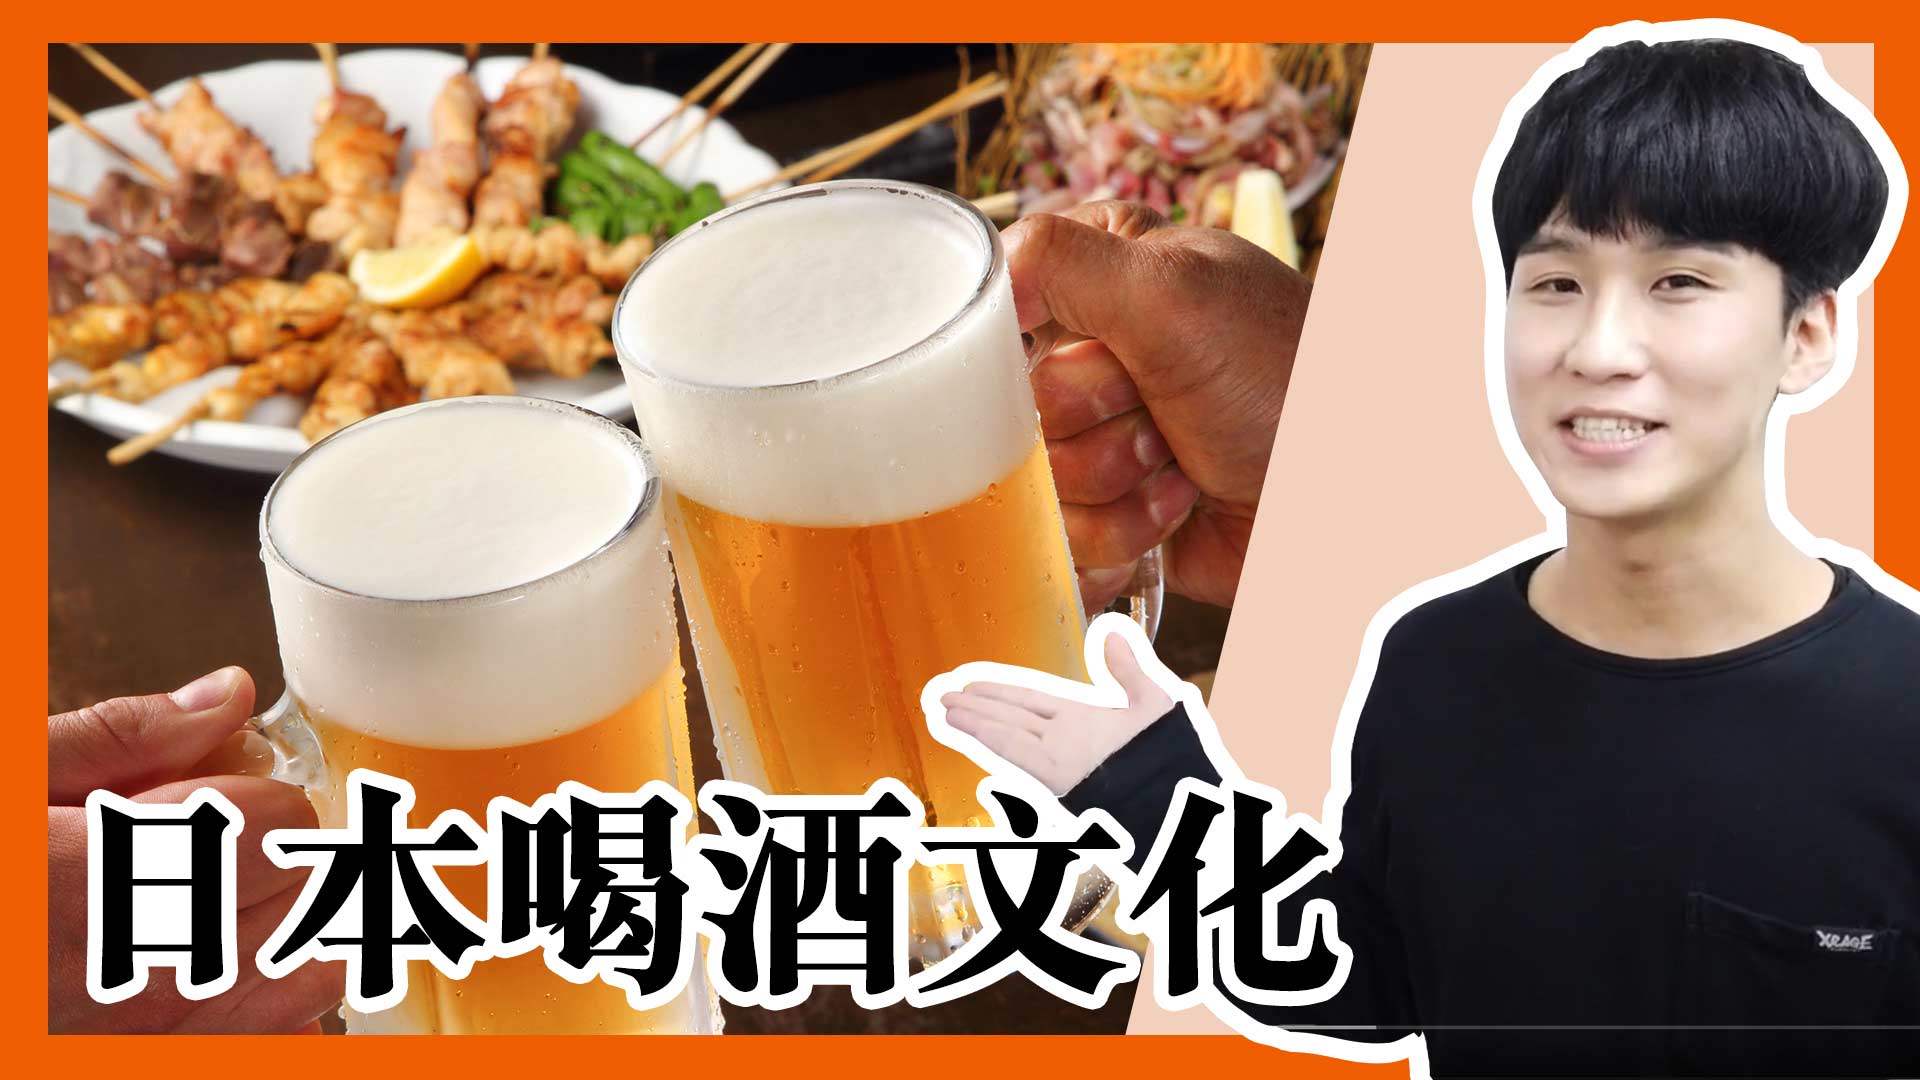 居酒屋里的文化与礼仪4讲 | All About Japan